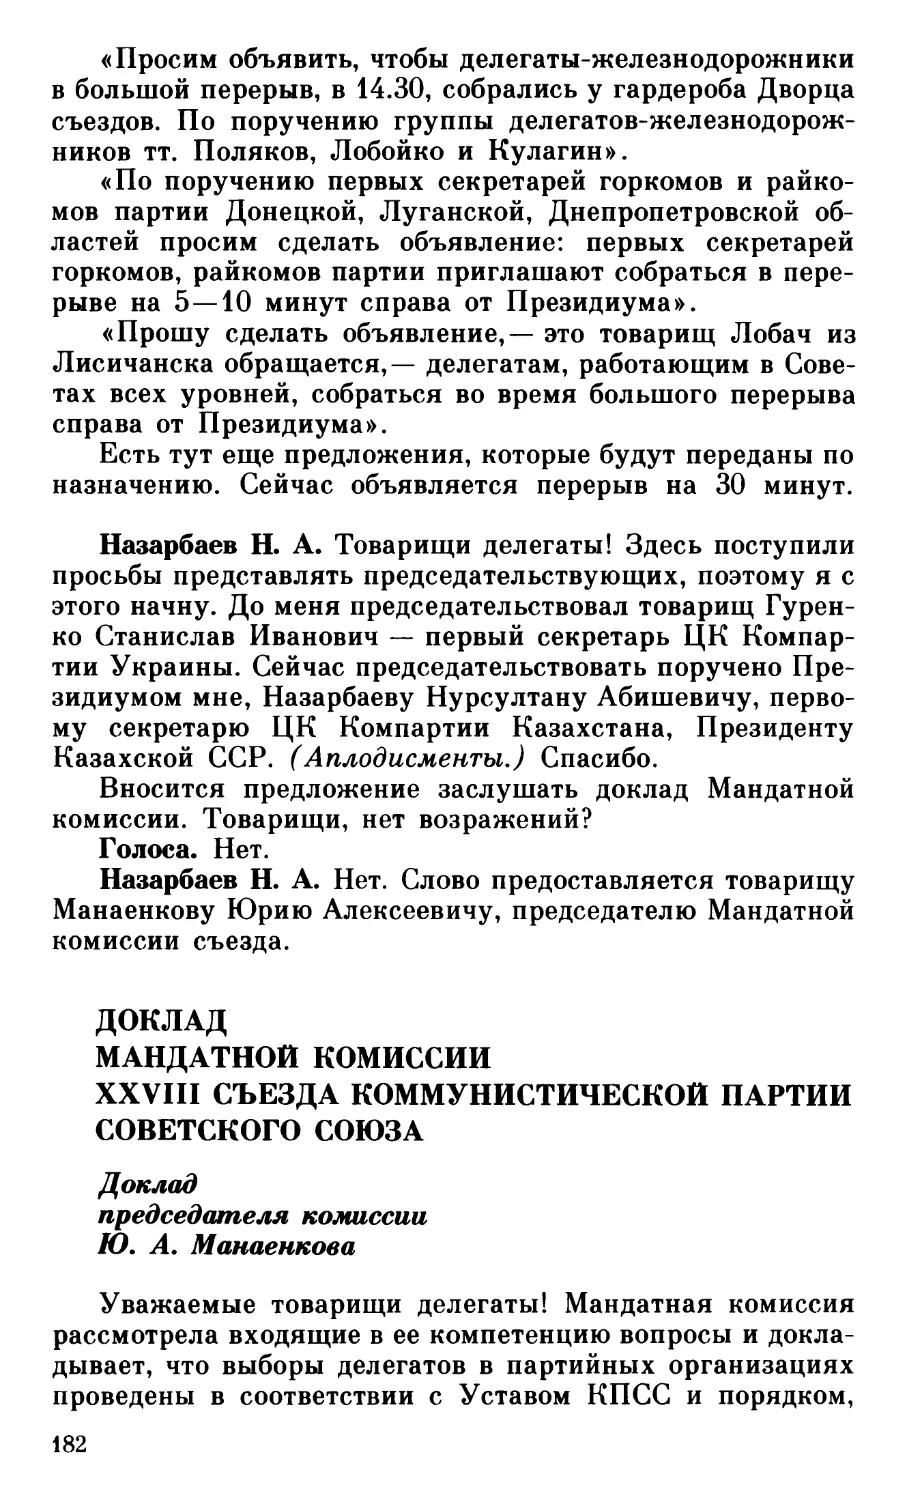 Доклад председателя Мандатной комиссии тов. Манаенкова Ю. А.